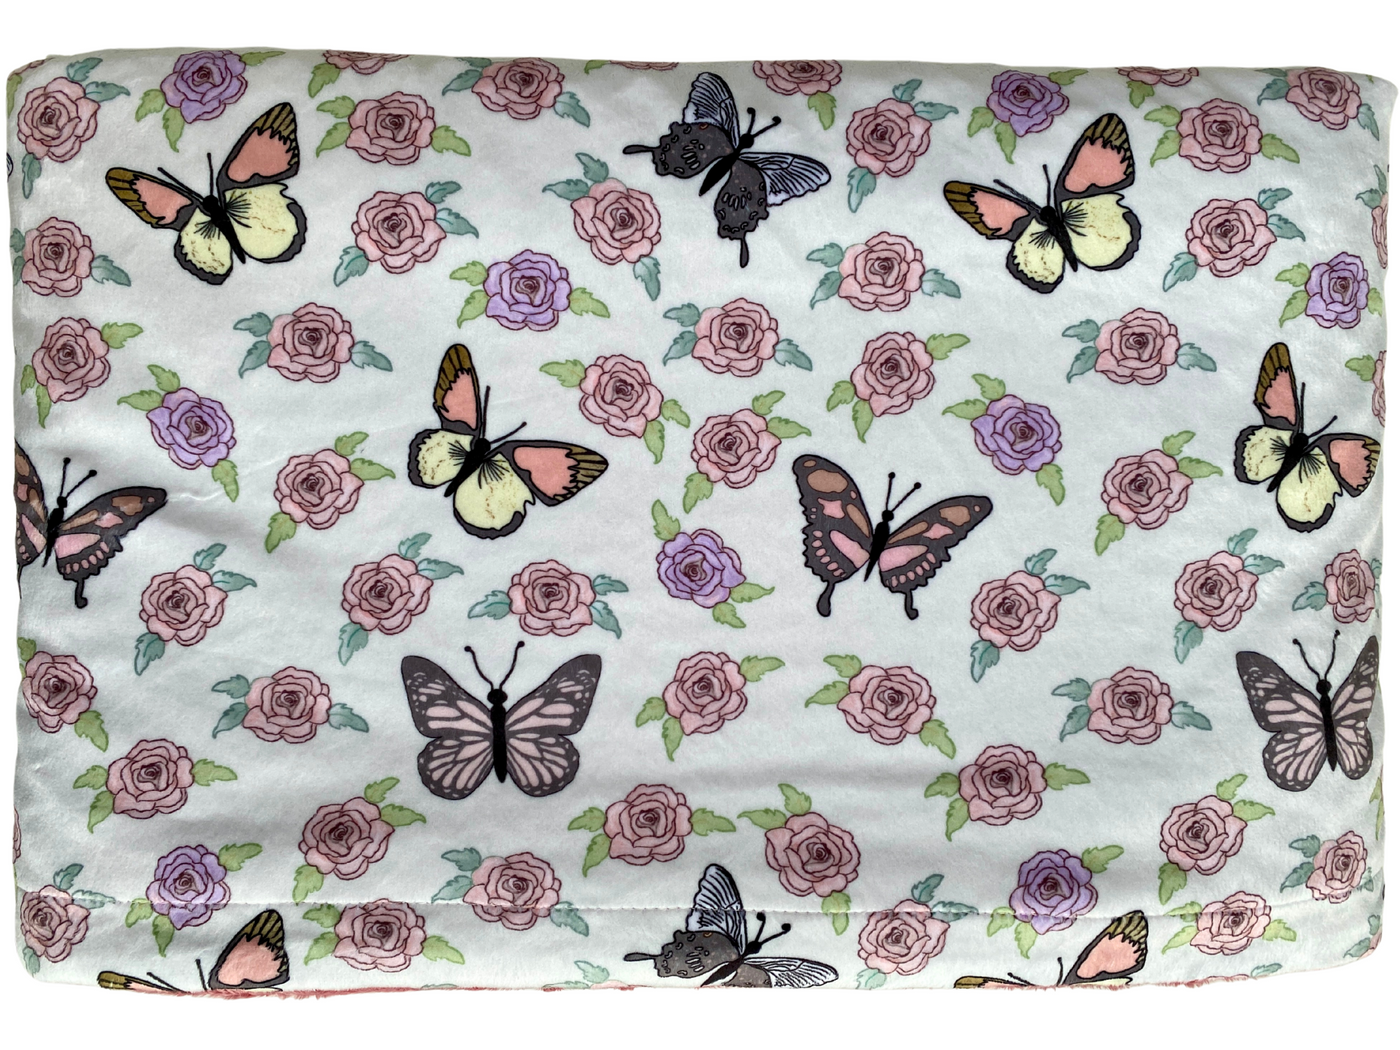 Giant Blanket: Butterflies in a rose garden (pink minky)